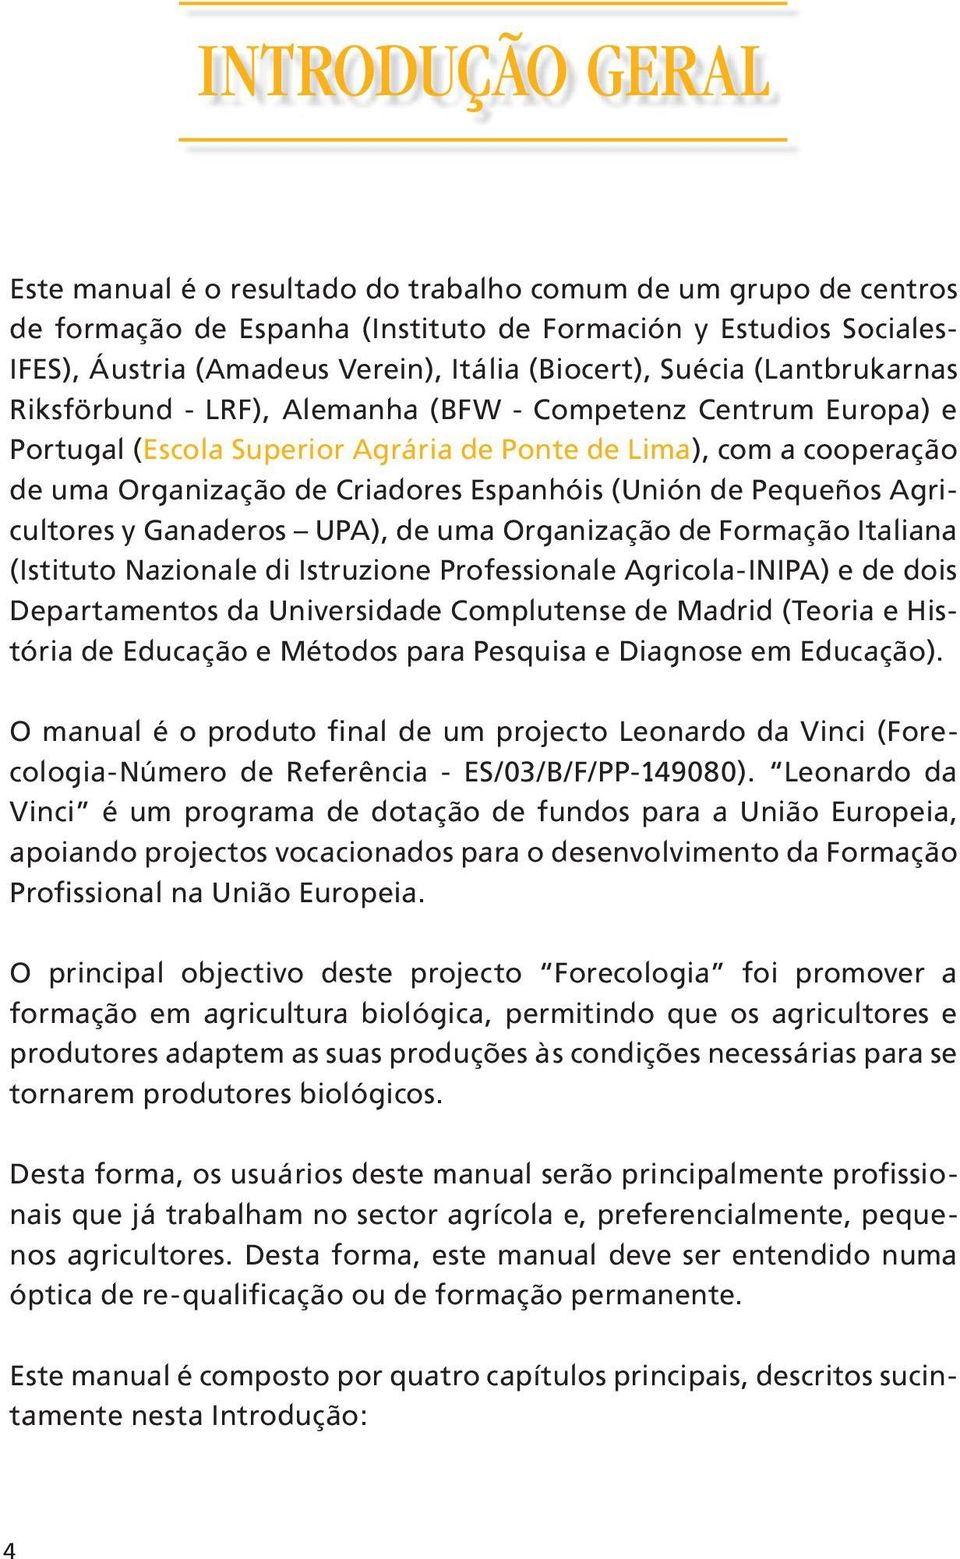 Espanhóis (Unión de Pequeños Agricultores y Ganaderos UPA), de uma Organização de Formação Italiana (Istituto Nazionale di Istruzione Professionale Agricola-INIPA) e de dois Departamentos da